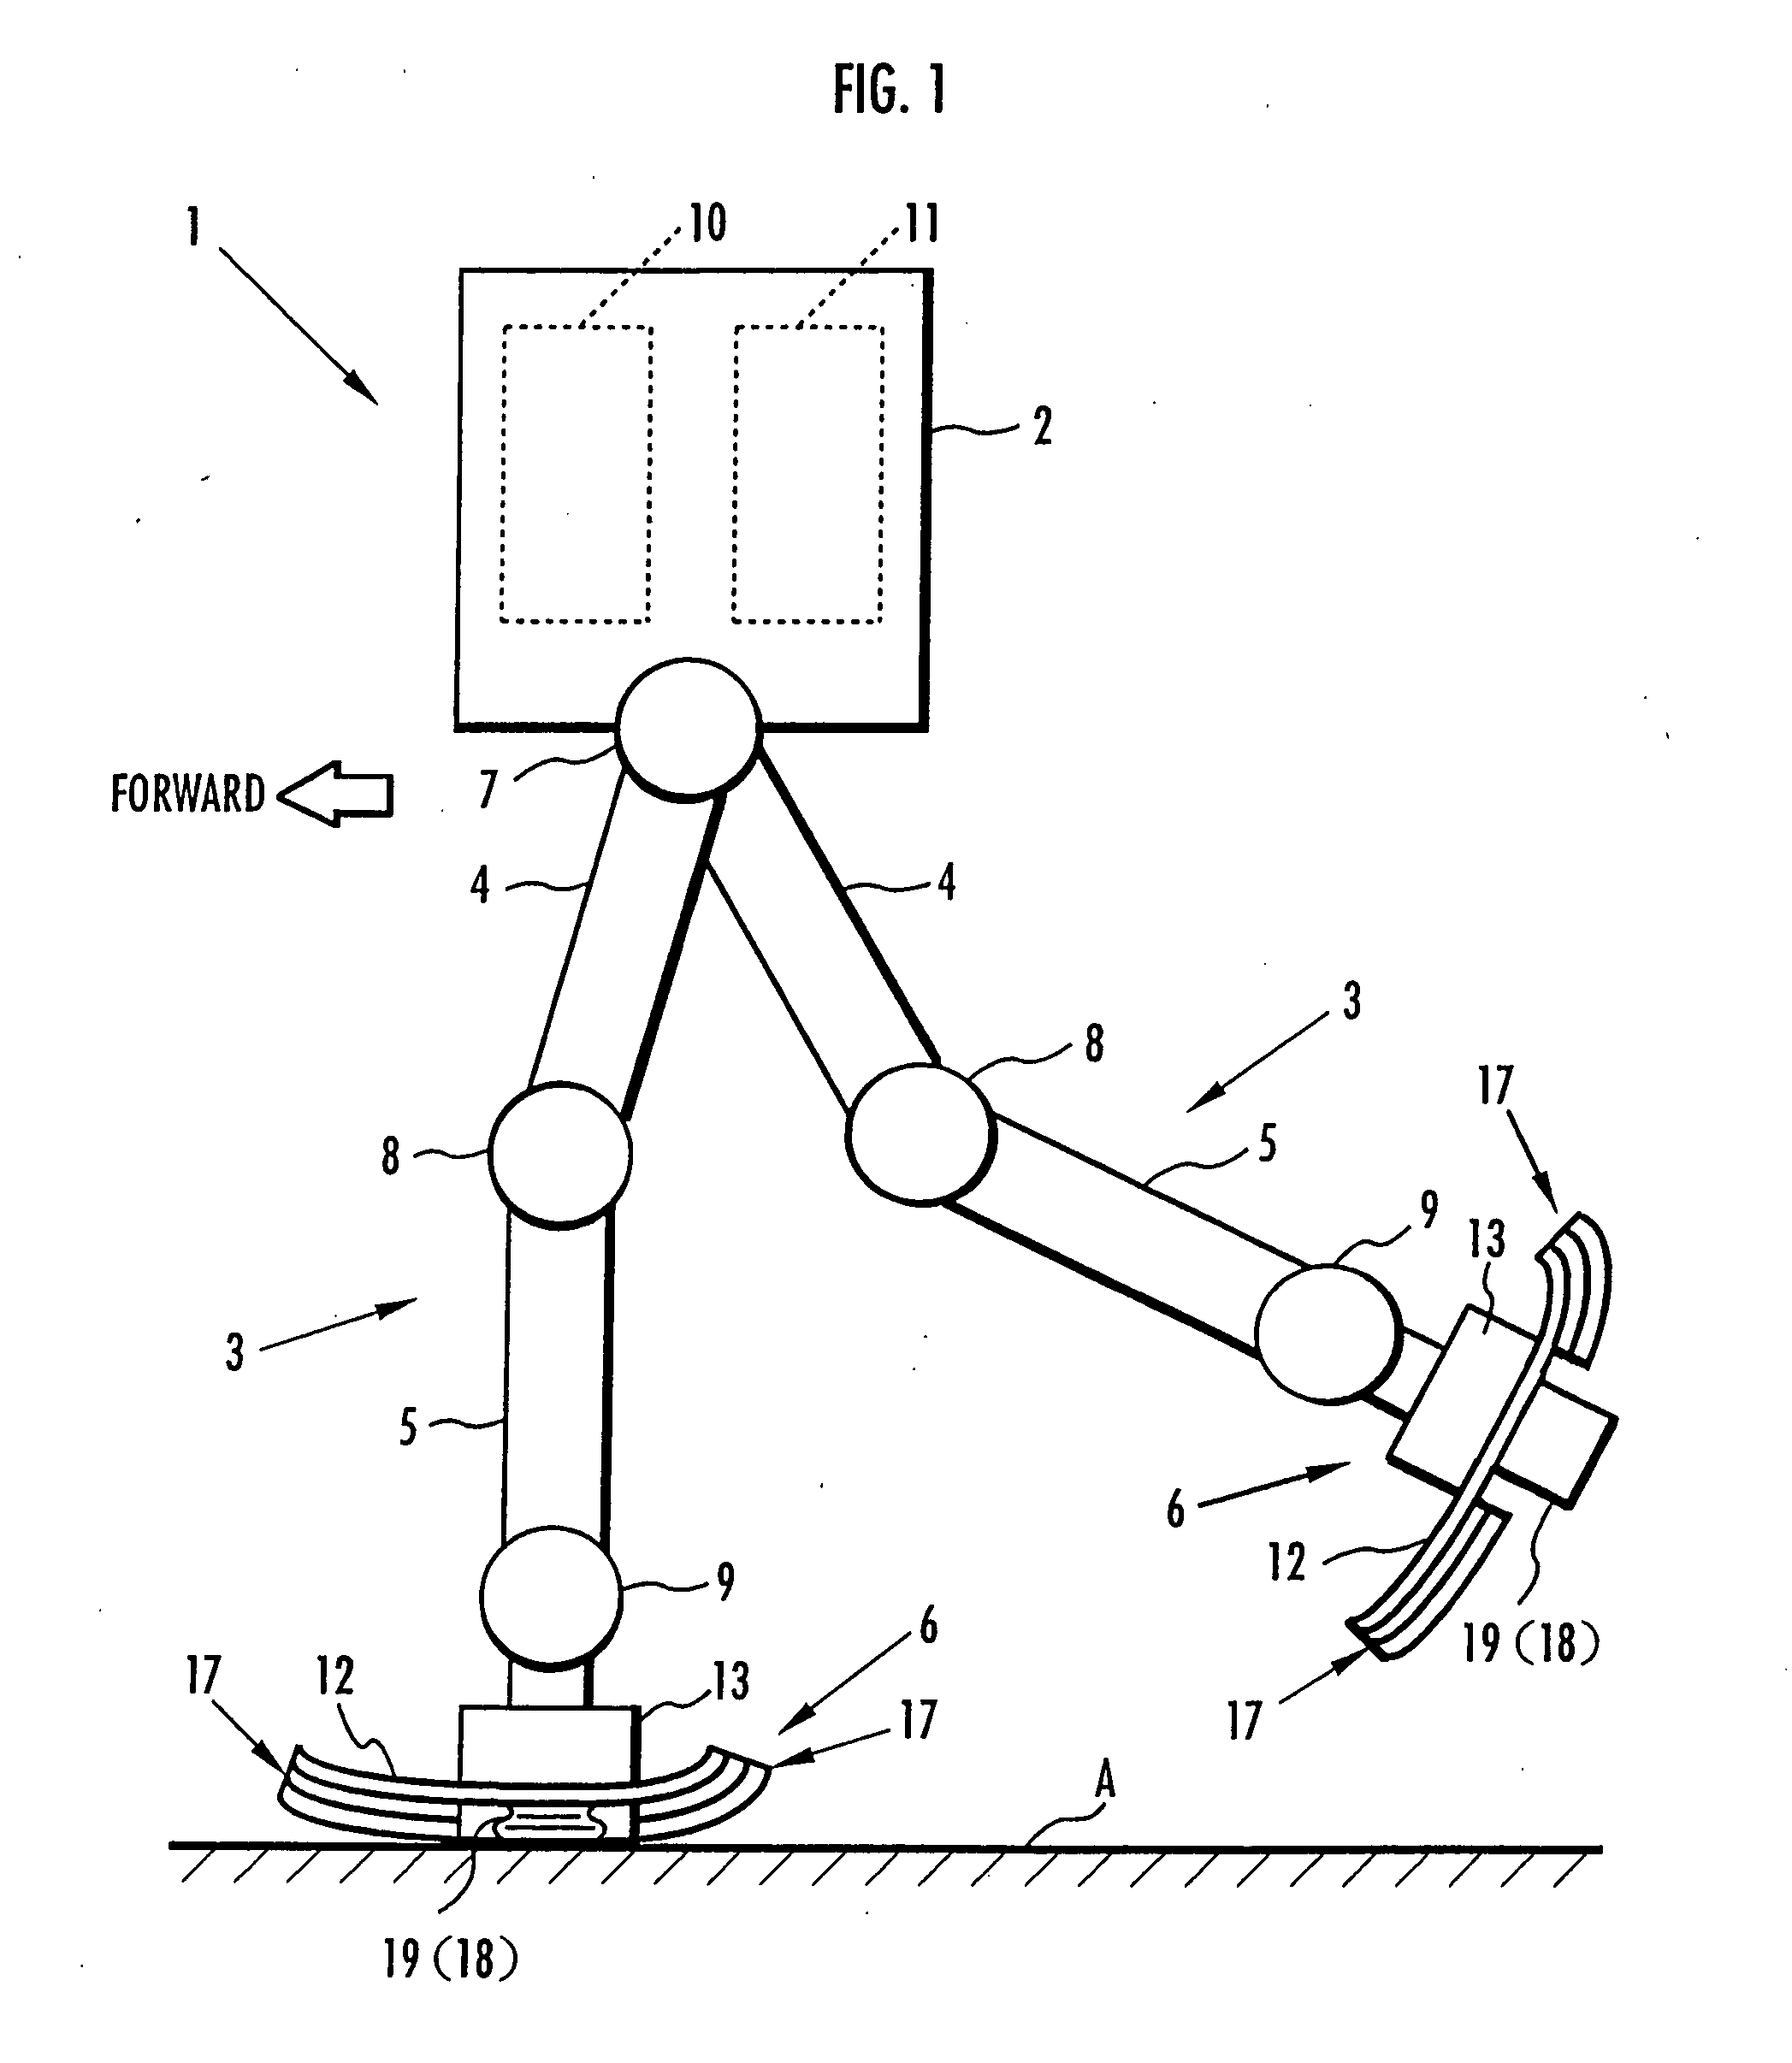 Device for absorbing floor-landing shock for legged mobile robot